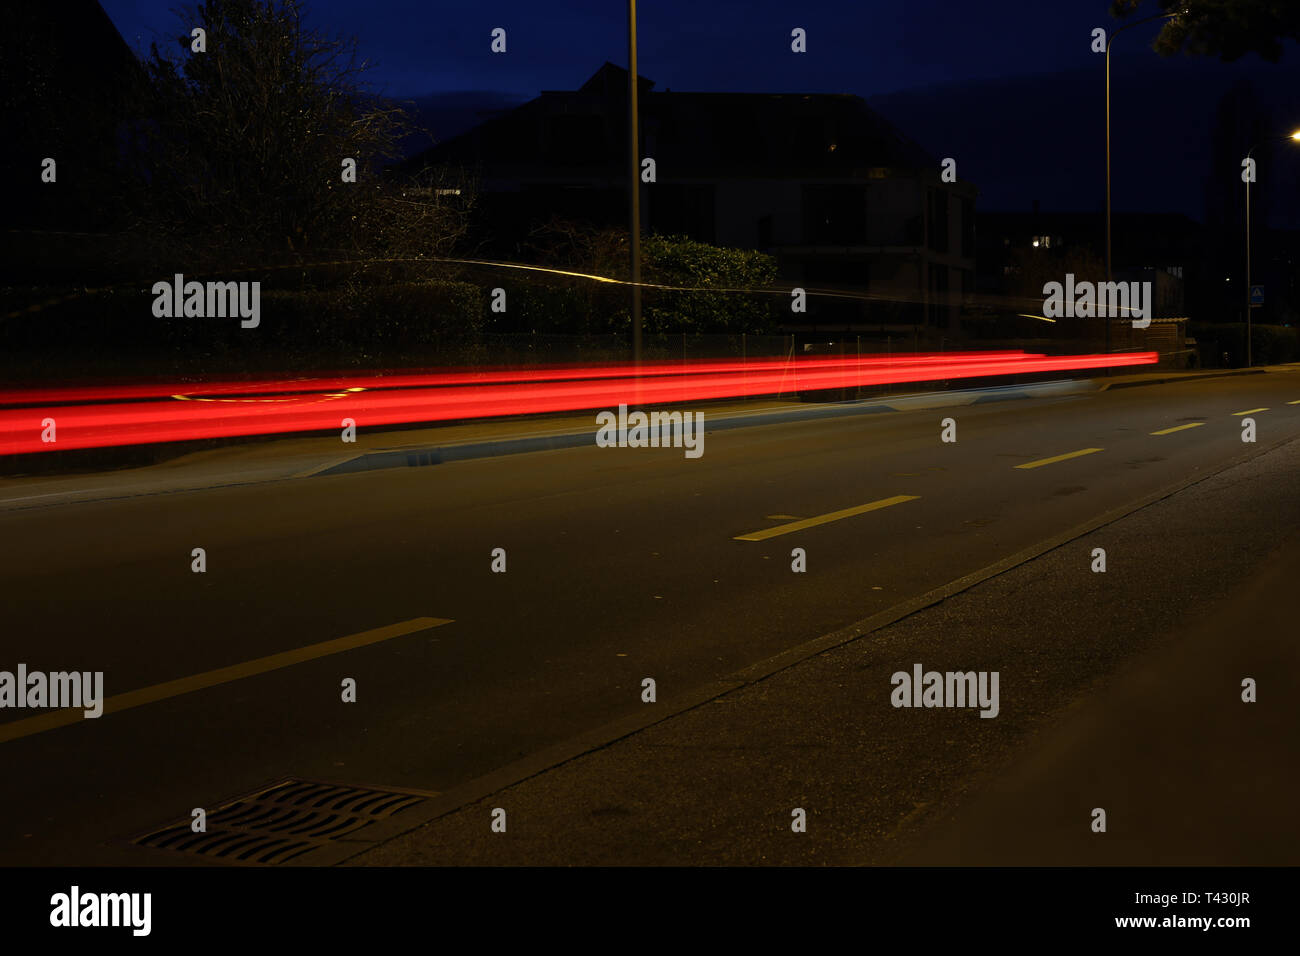 Foto astratte di traffico notturno. È possibile vedere la luce colorata linee in un ambiente buio. Fotografato a Nyon, Svizzera durante la primavera. Foto Stock